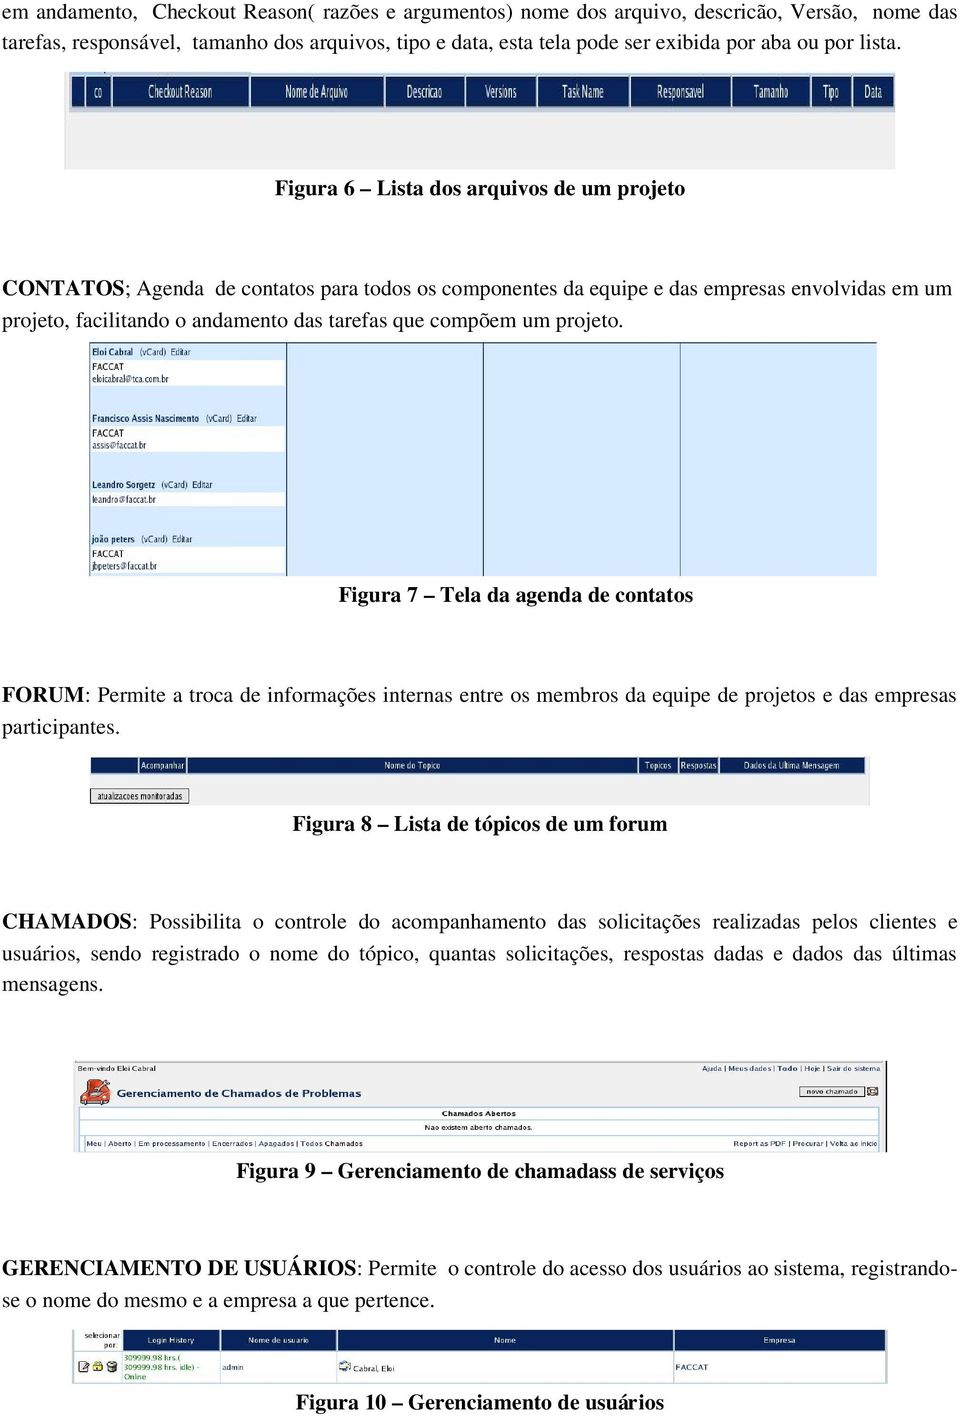 Figura 6 Lista dos arquivos de um projeto CONTATOS; Agenda de contatos para todos os componentes da equipe e das empresas envolvidas em um projeto, facilitando o andamento das tarefas que compõem um